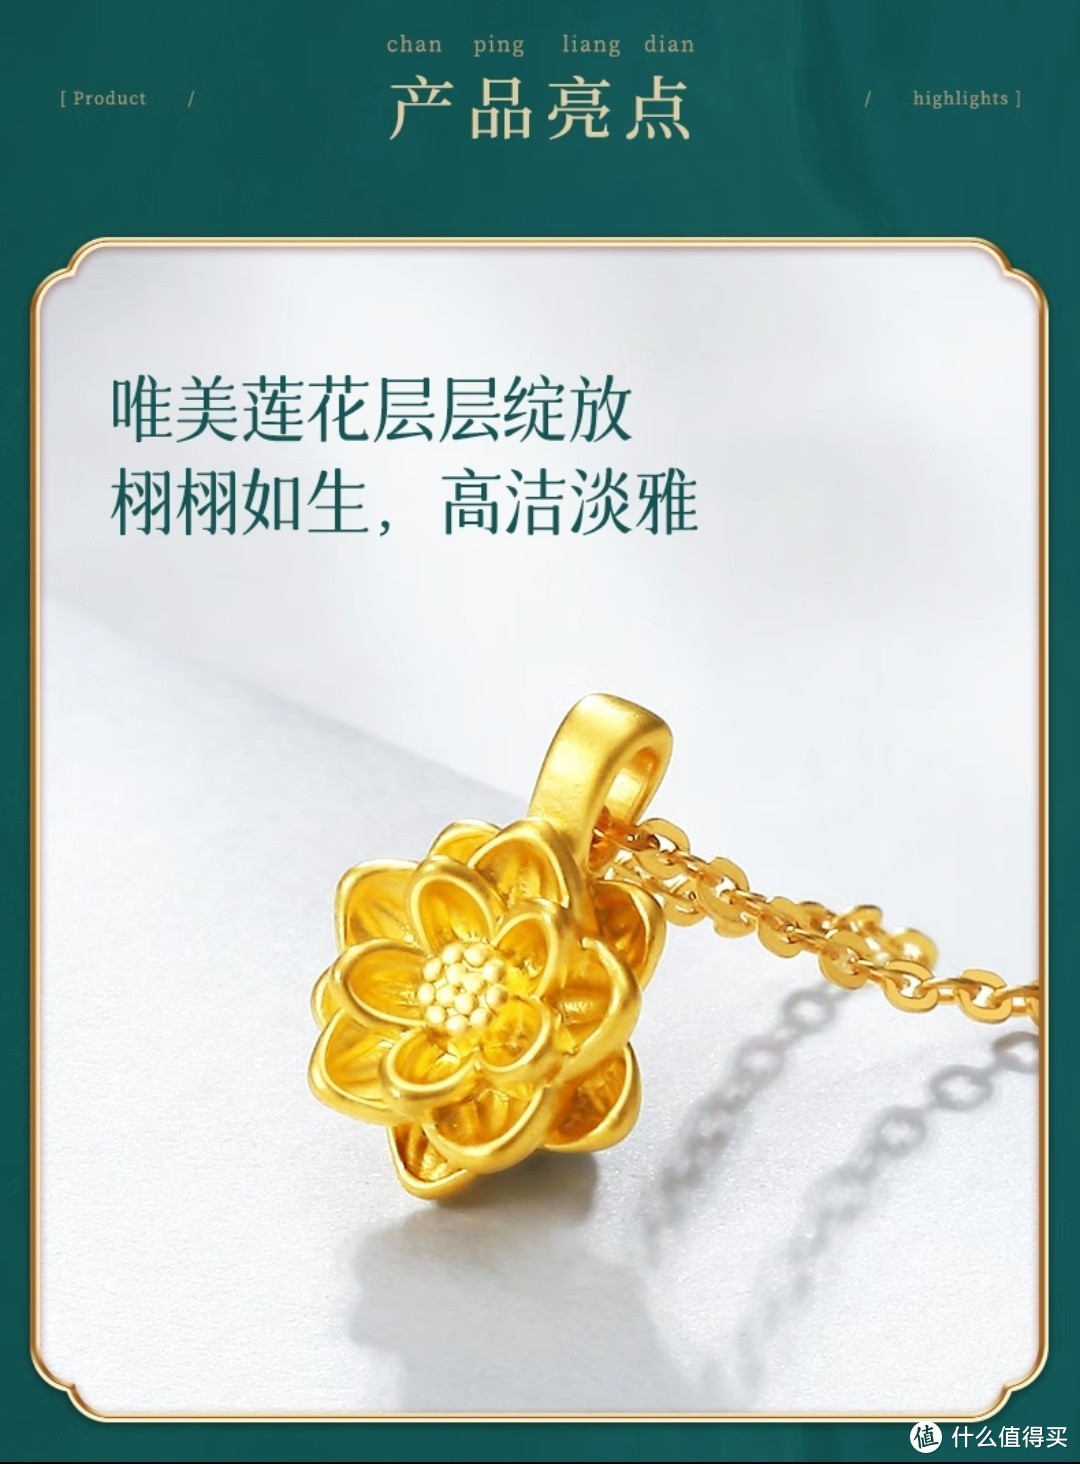 情人节礼物首选黄金饰品，中国黄金的足金莲花吊坠真可谓是超凡脱俗，富贵典雅气质的代表。